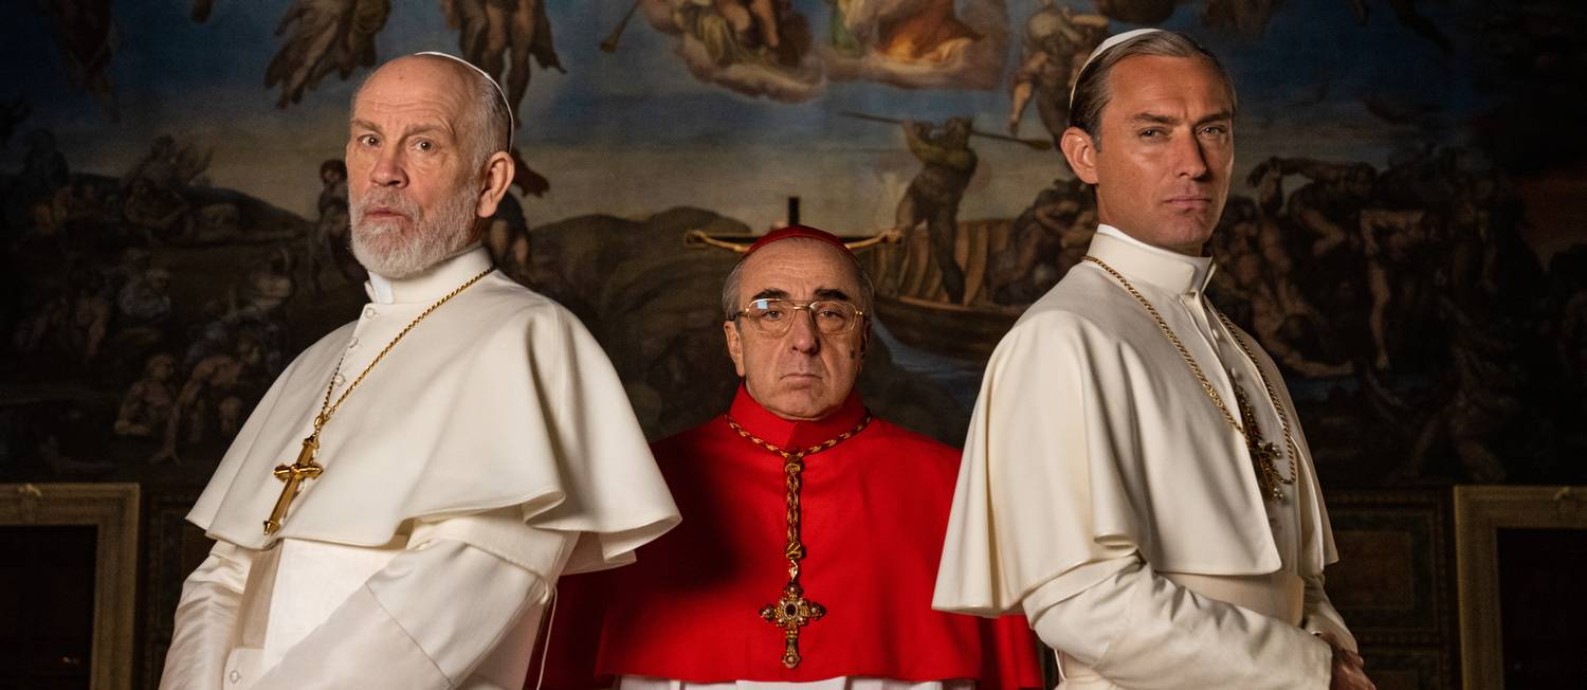 Dois papas e um cardeal. Jude Law, John Malkovich e Silvio Orlando posam no set de 'The new pope', que chega ao Brasil pela FOX Foto: Gianni Fiorito